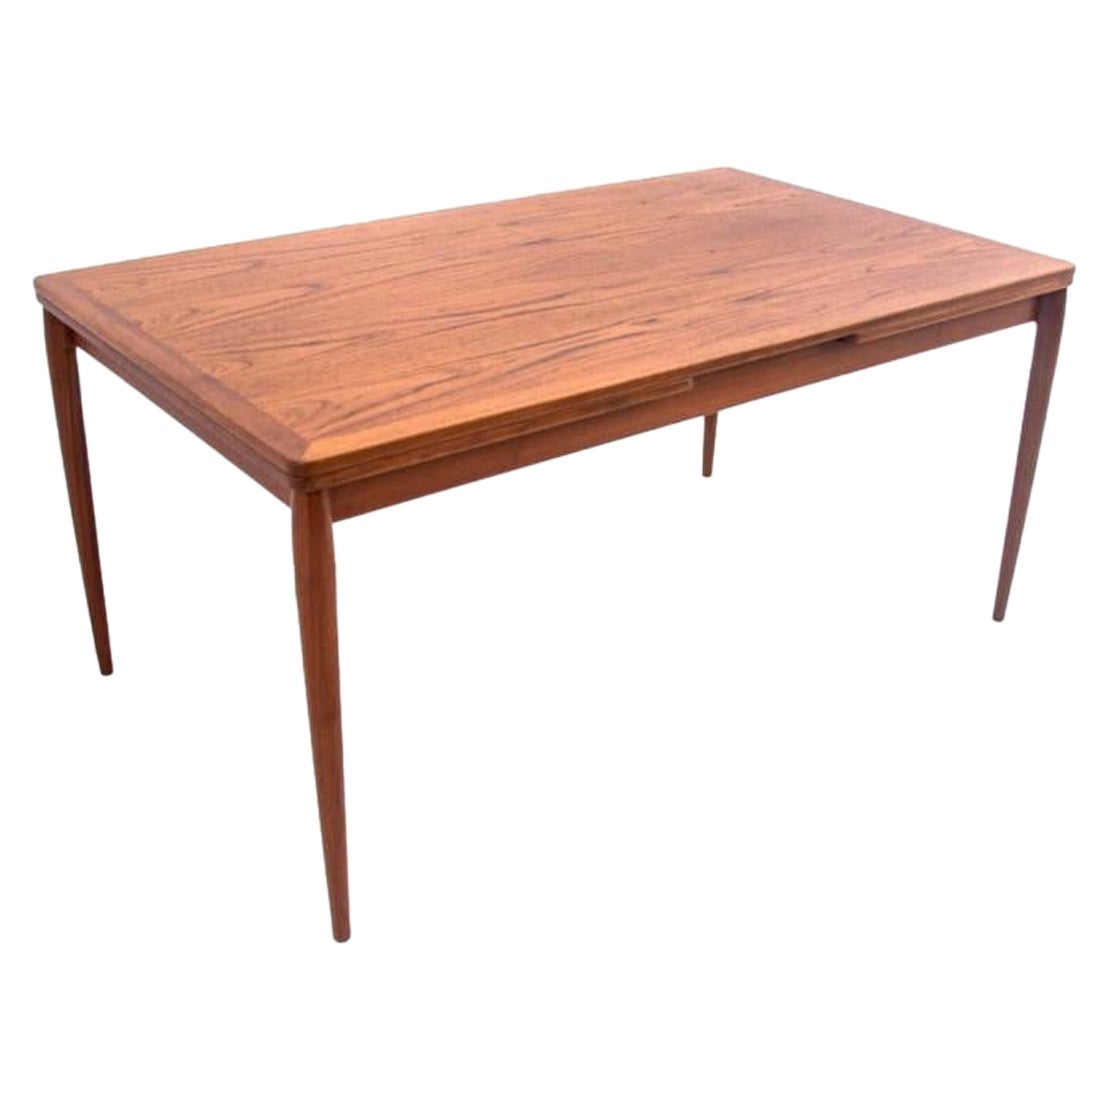 Tisch, dänisches Design, 1960er-Jahre. Nach der Renovierung.